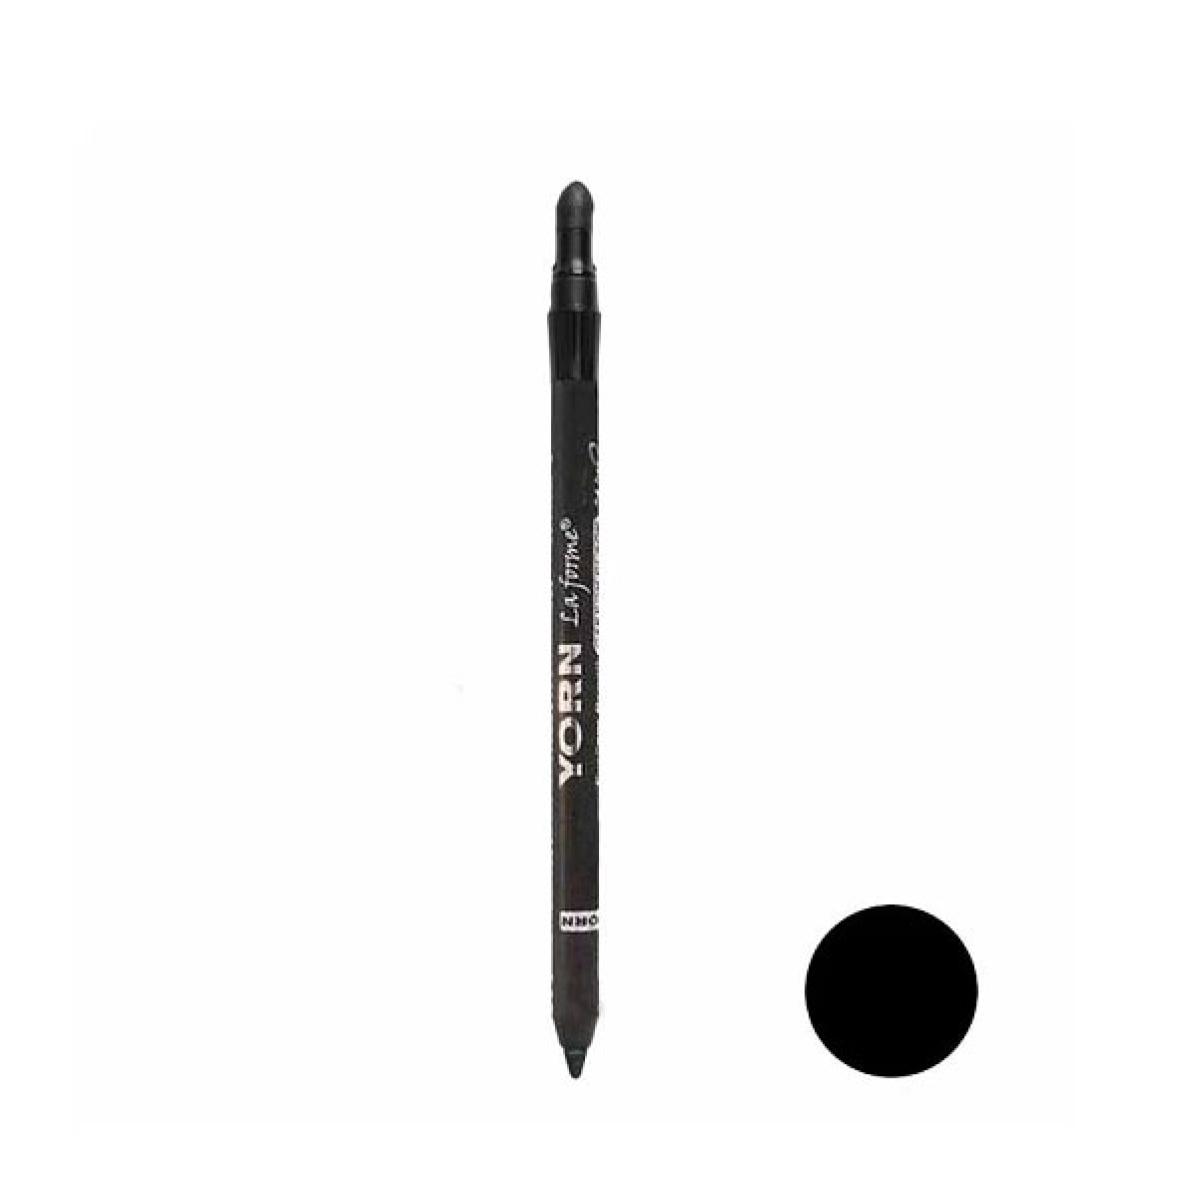 مداد چشم شمعی مدل Carbon Black پد دار - Carbon Black eye liner pencil